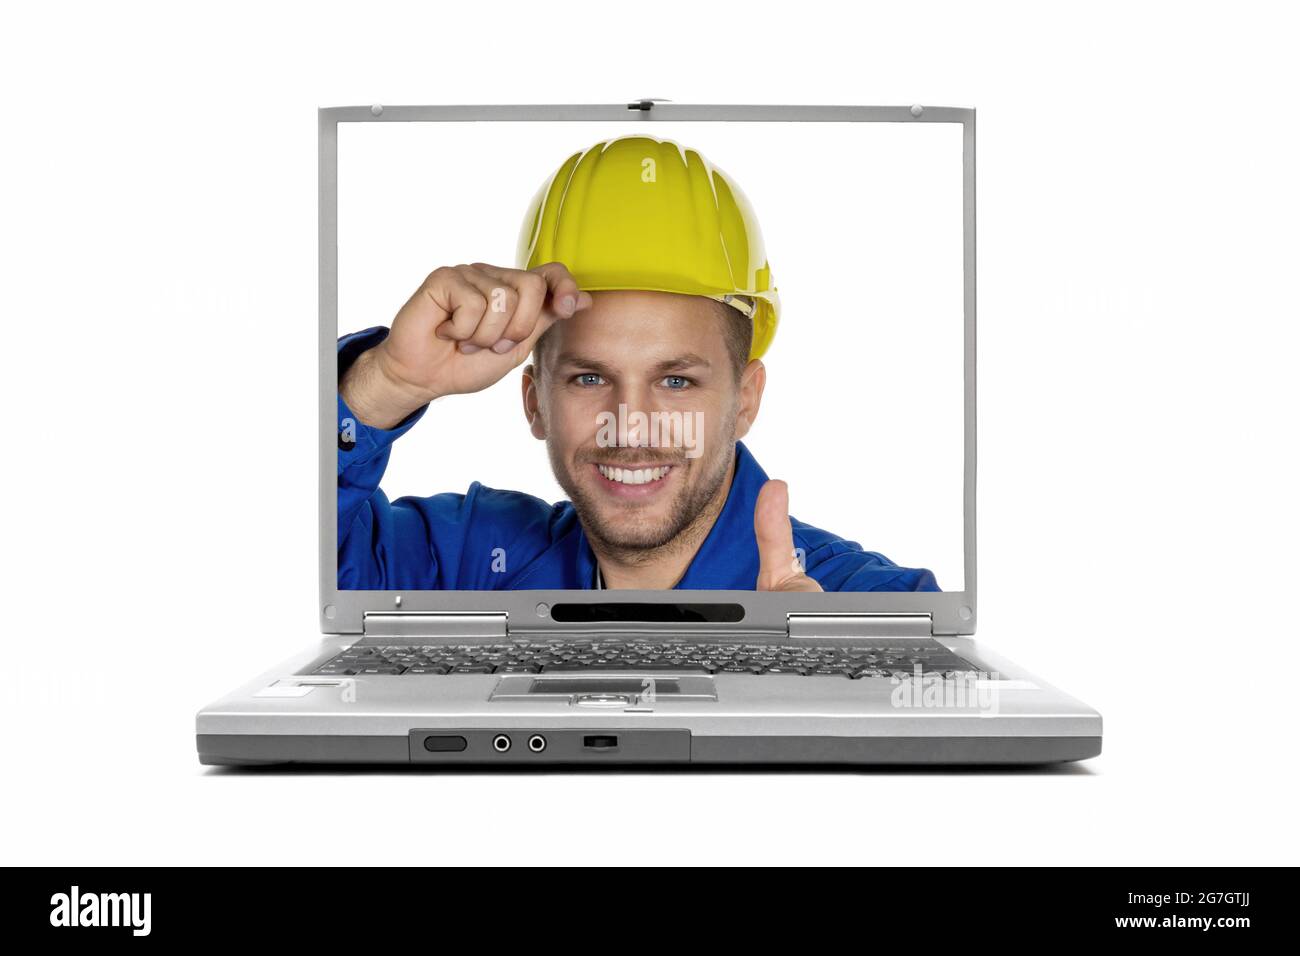 travailleur avec un casque sur l'écran d'un ordinateur portable Banque D'Images